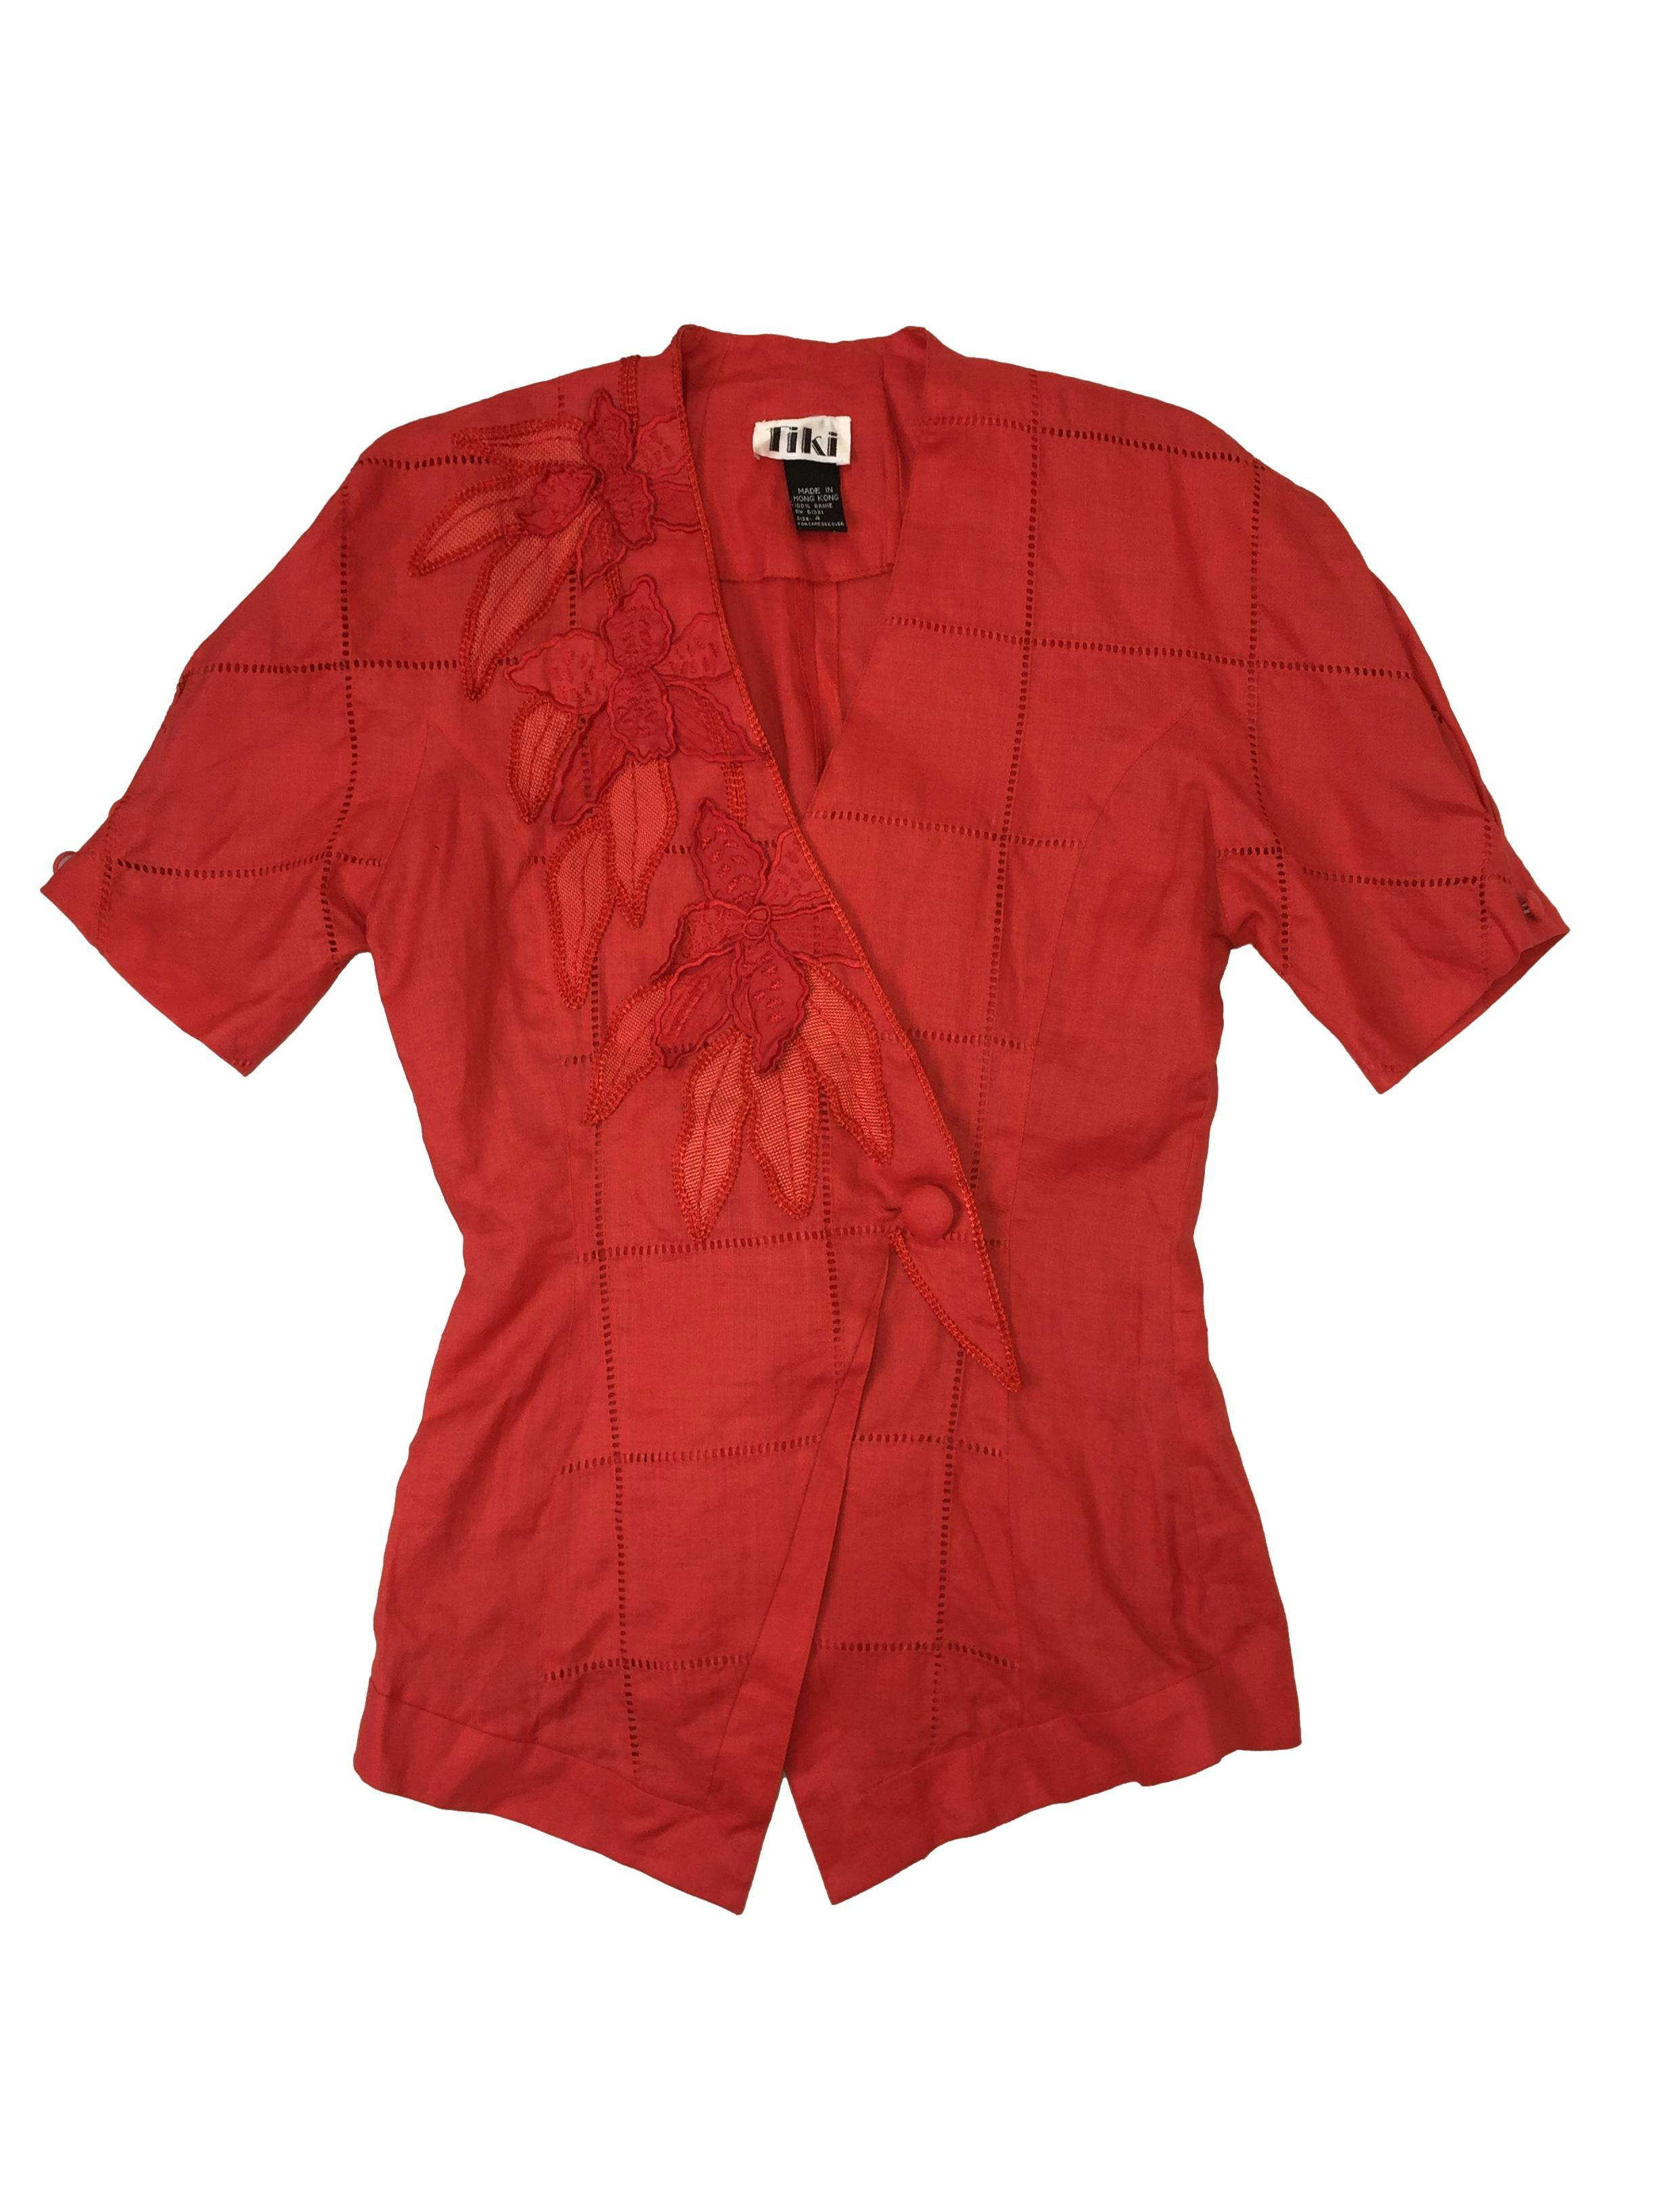 Blusa vintage cruzada en color rojo, tela brocada tipo lino con aplicaciones, mangas abullonadas, botón central. Busto 98 y largo 71 